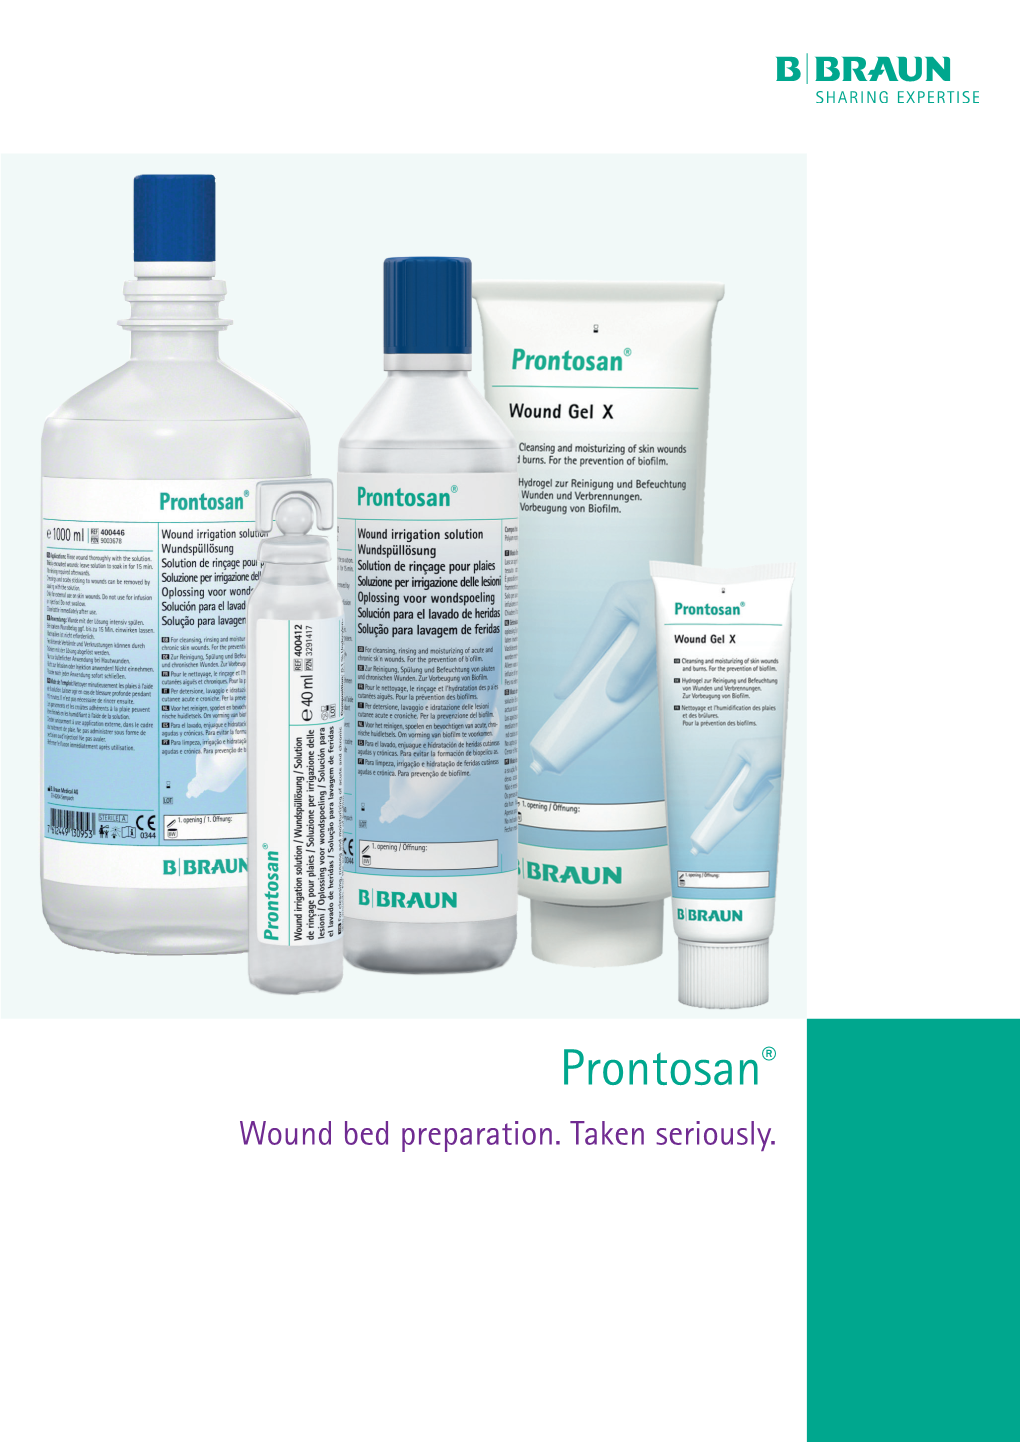 Prontosan® Wound Bed Preparation